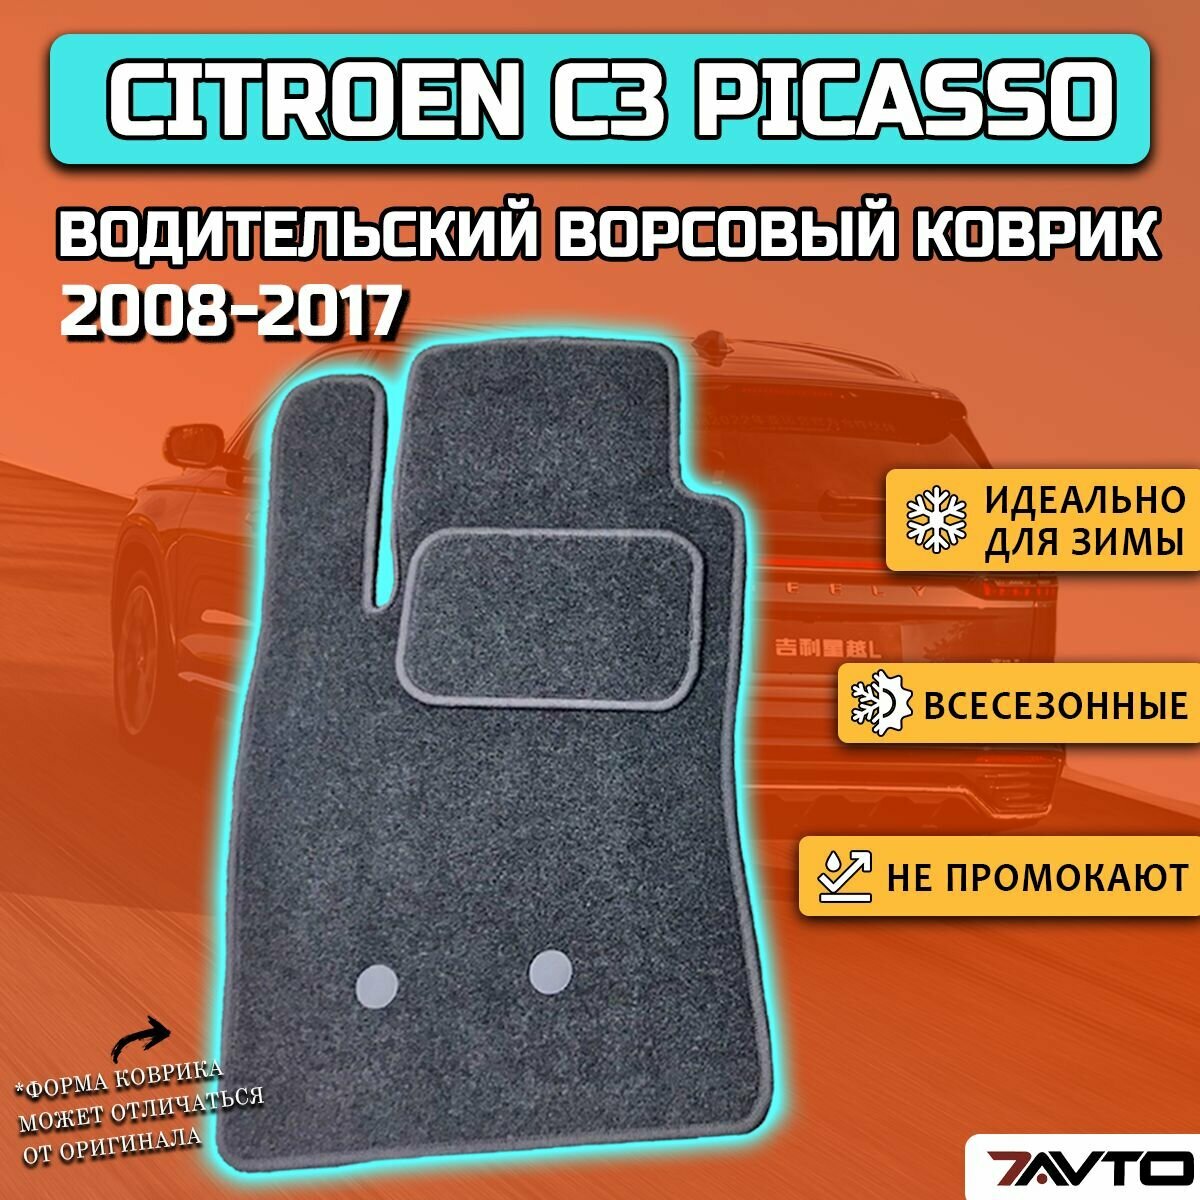 Водительский ворсовый коврик ECO на Citroen C3 Picasso 2008-2017 / Ситроен Ц3 Пикассо